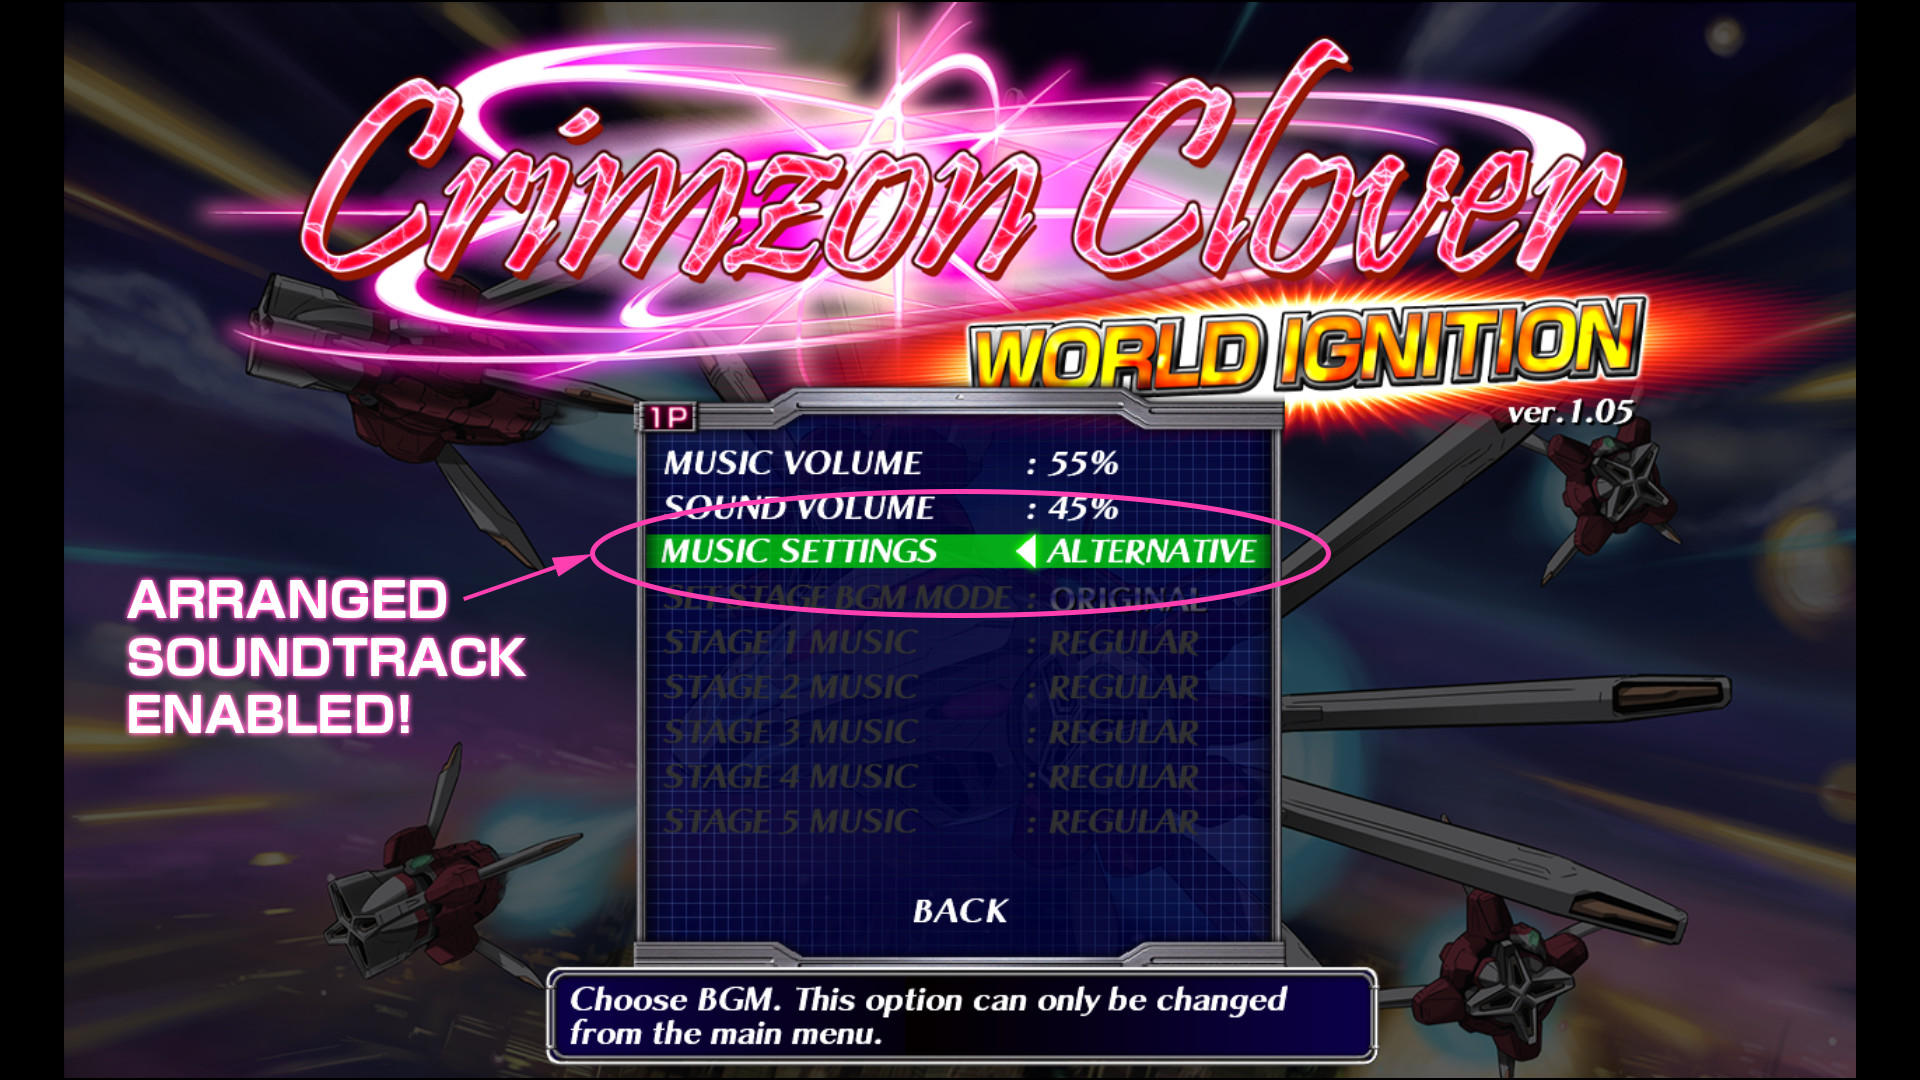 Crimzon Clover WORLD IGNITION - Arranged Sound Track screenshot